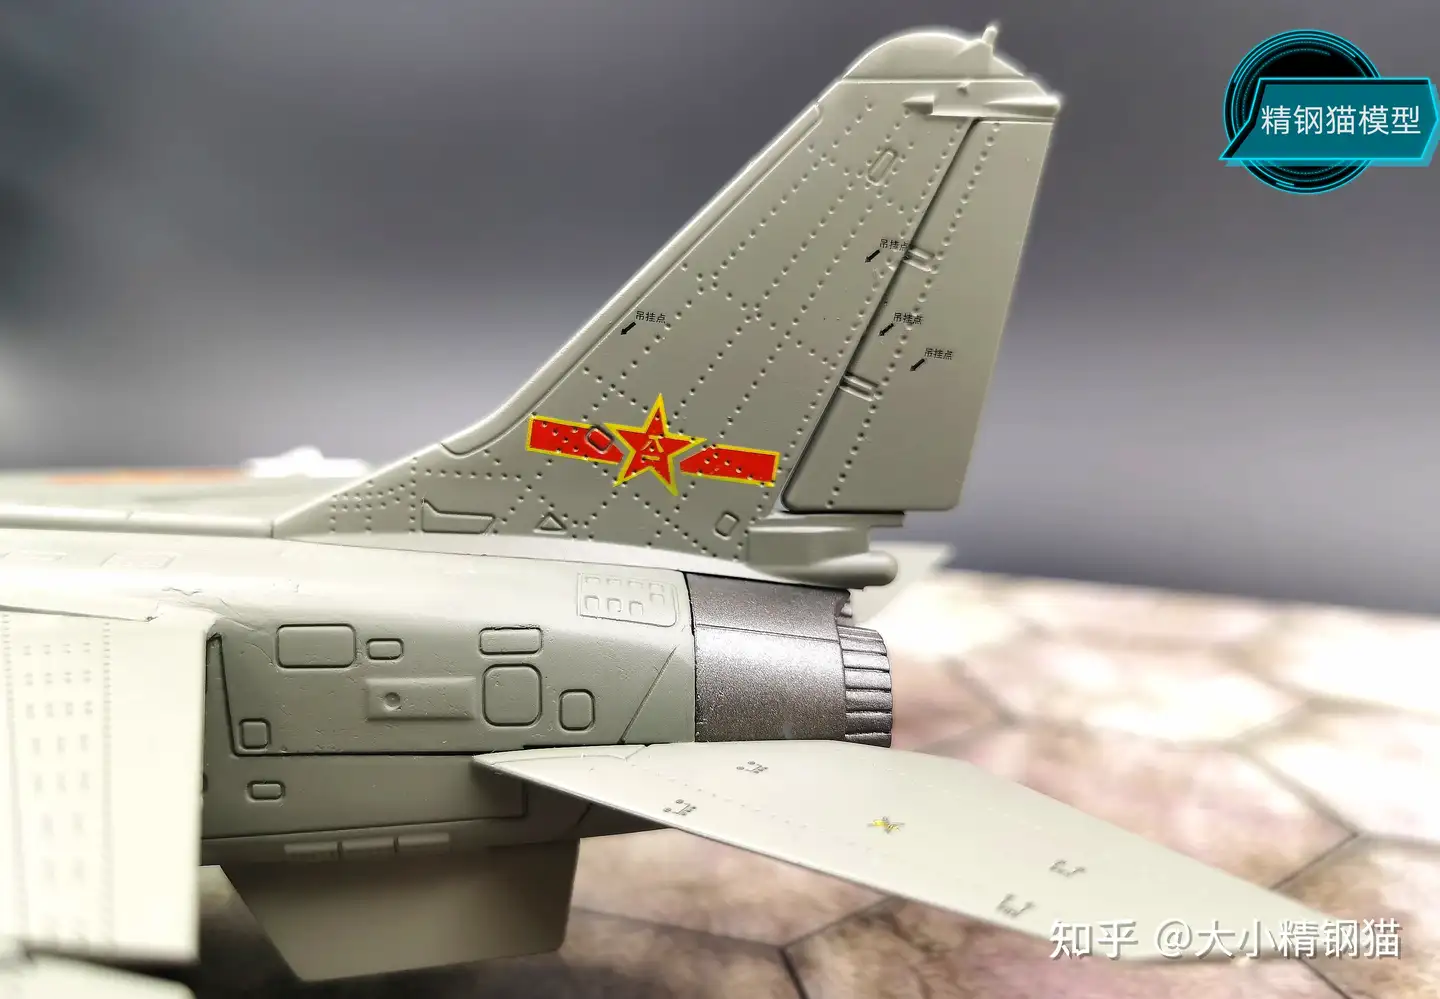 冲天飞豹——中国空军歼轰-7A战斗轰炸机模型- 知乎